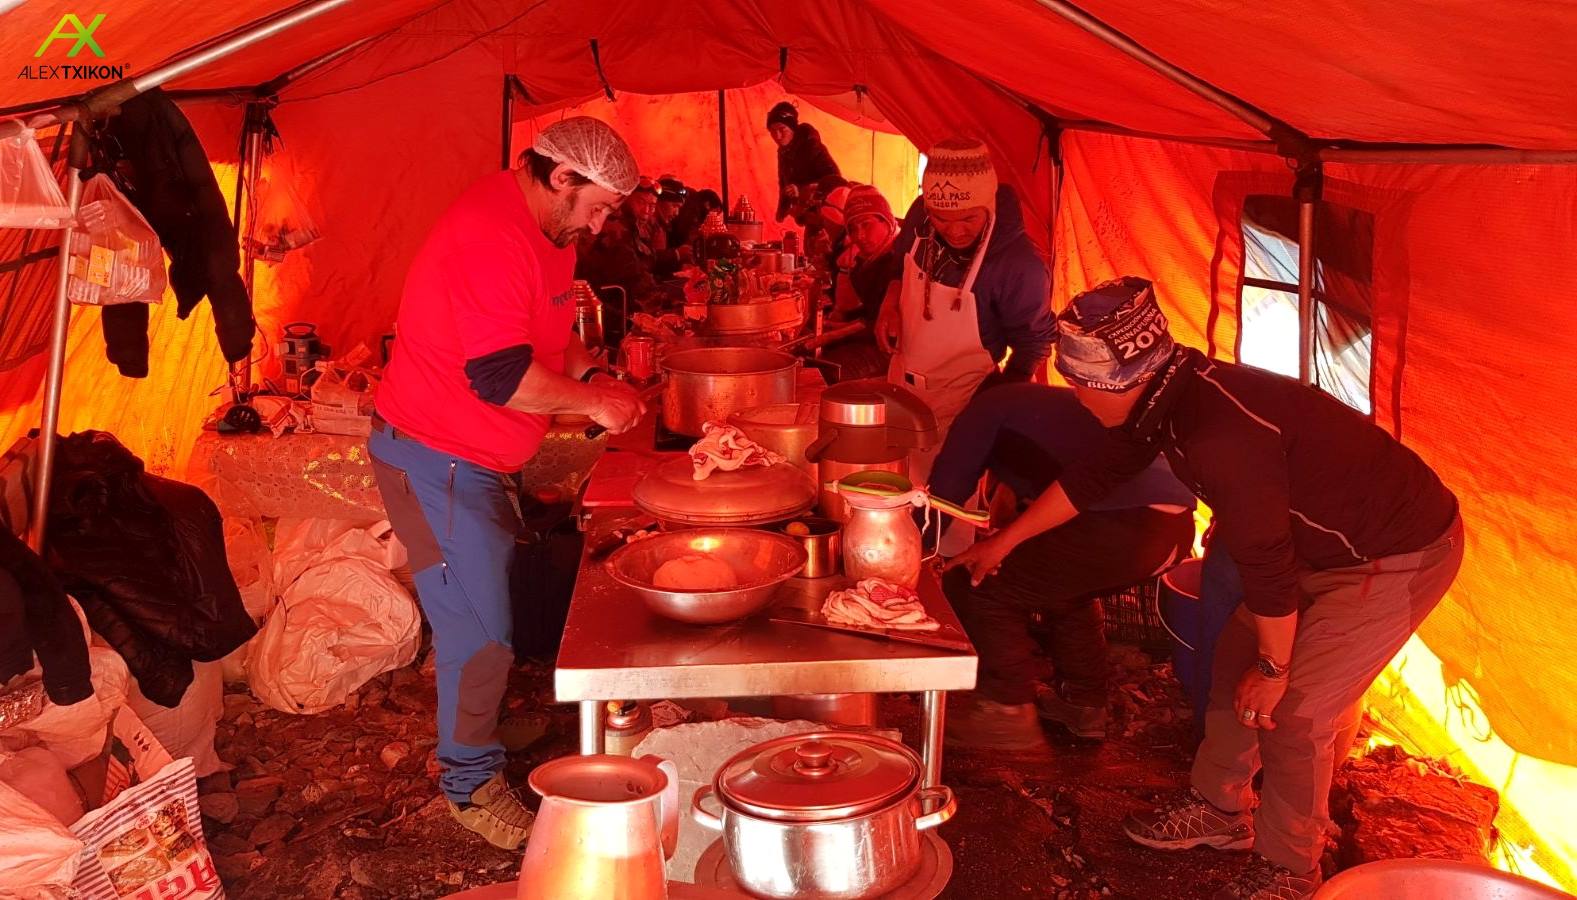 На кухне базового лагеря Эвереста. 5 января 2018 года. Фото Alex Txikon